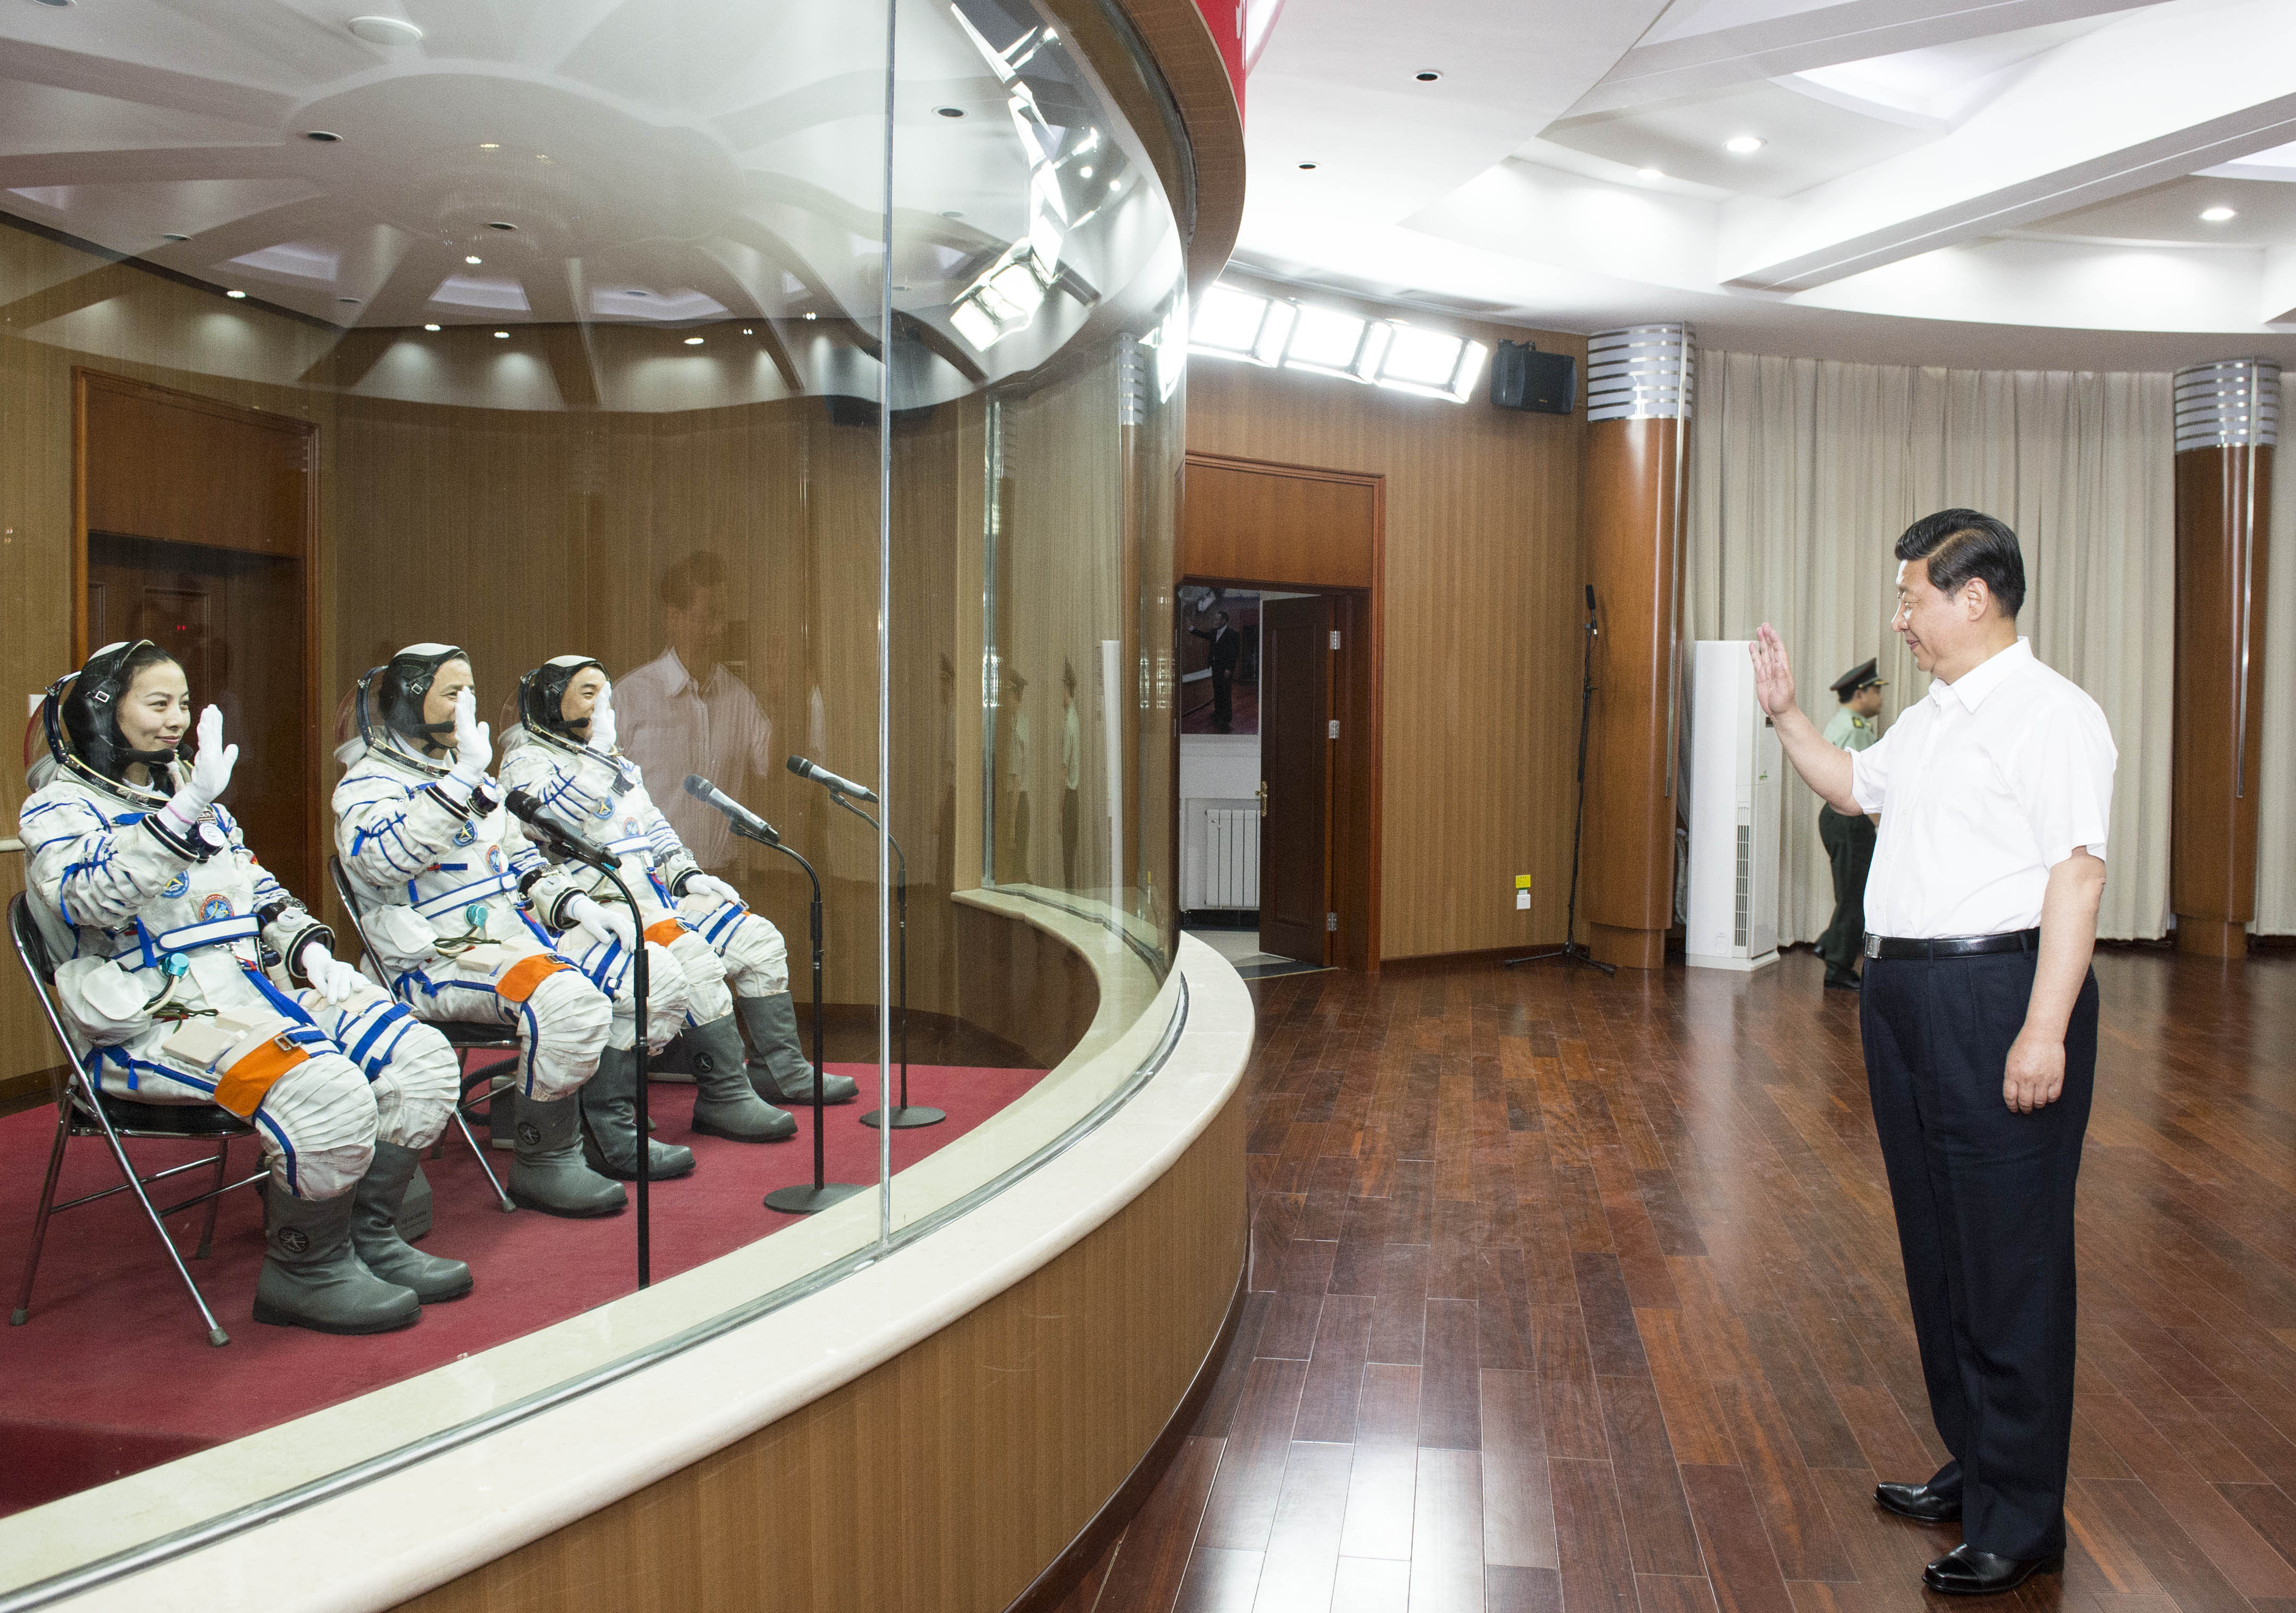 2013年6月11日，习近平总书记在酒泉卫星发射中心观看神舟十号载人飞船发射。这是习近平向即将出征的航天员聂海胜、张晓光、王亚平挥手致意。